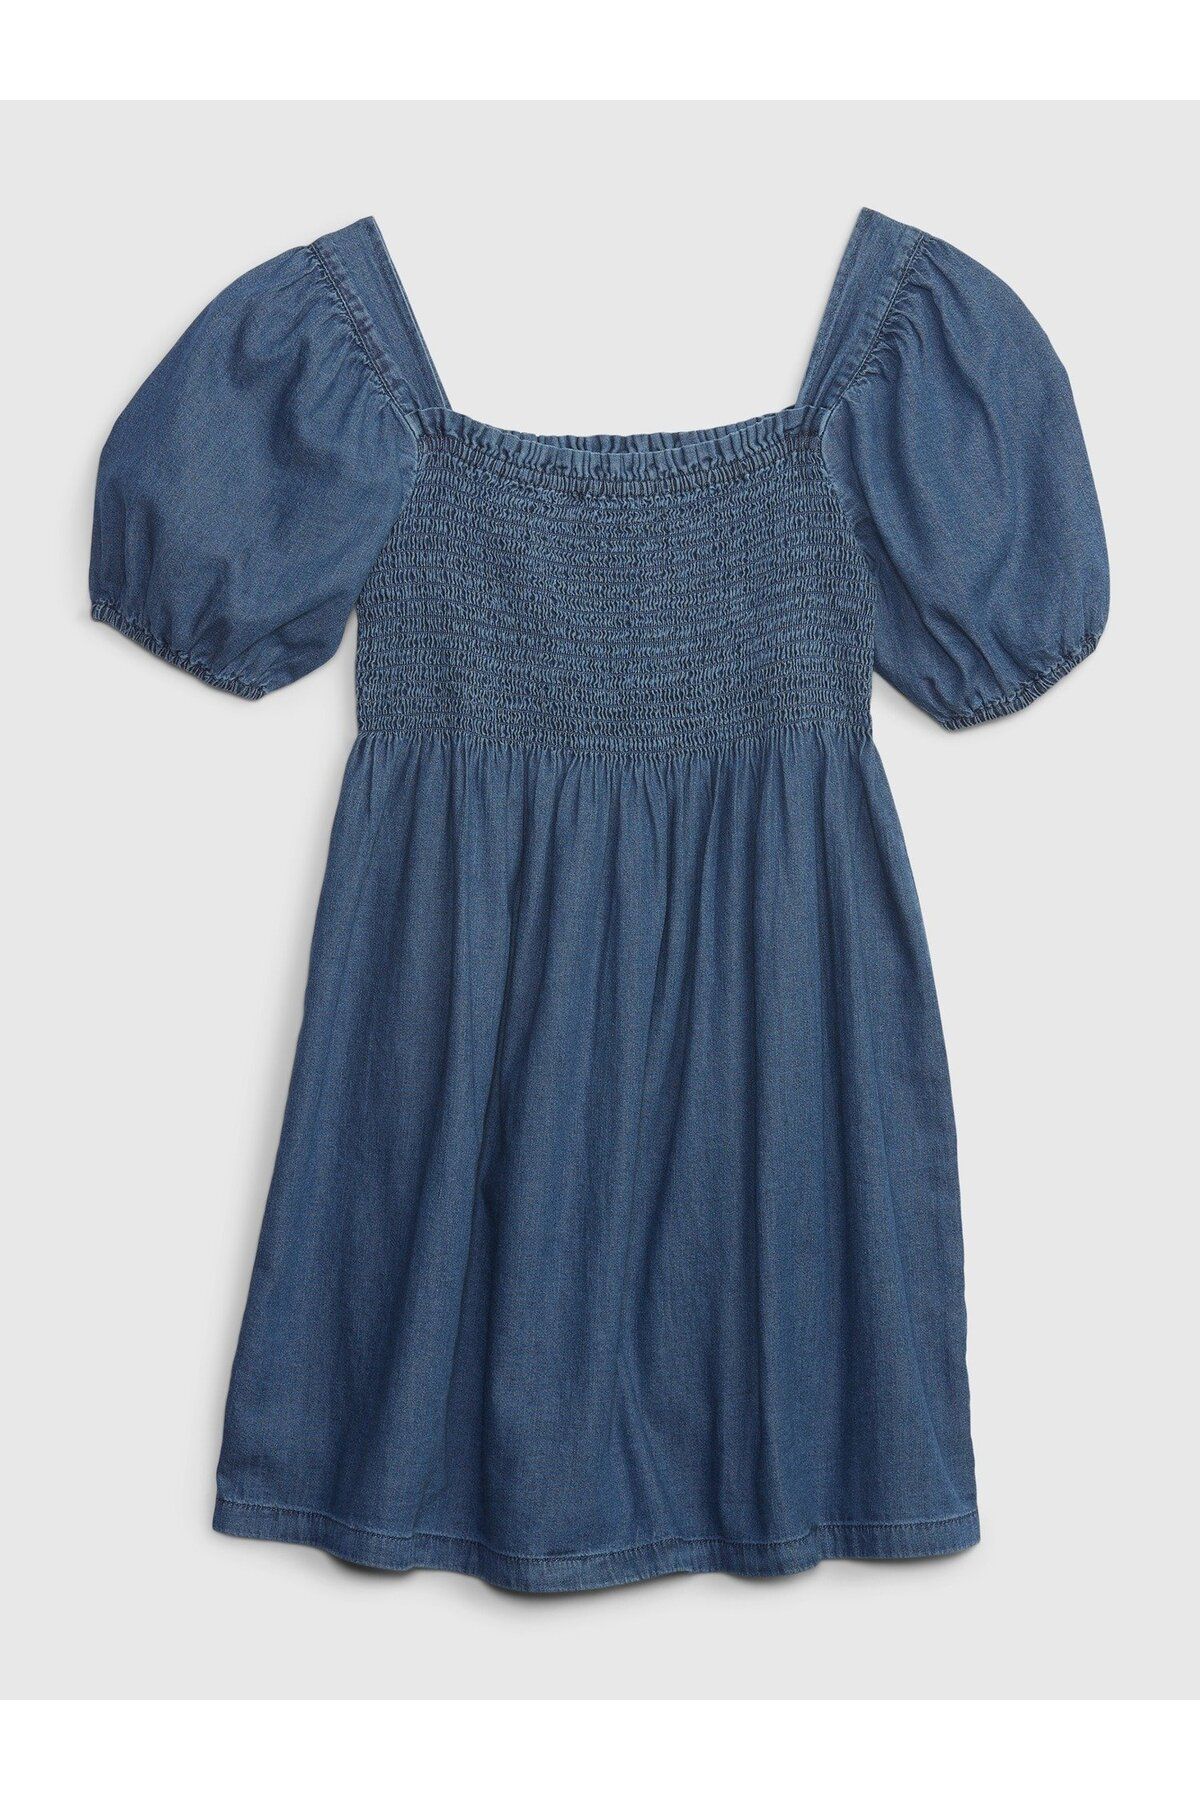 GAP Kız Çocuk Lacivert Büzgülü Balon Kol Washwell™ Denim Elbise